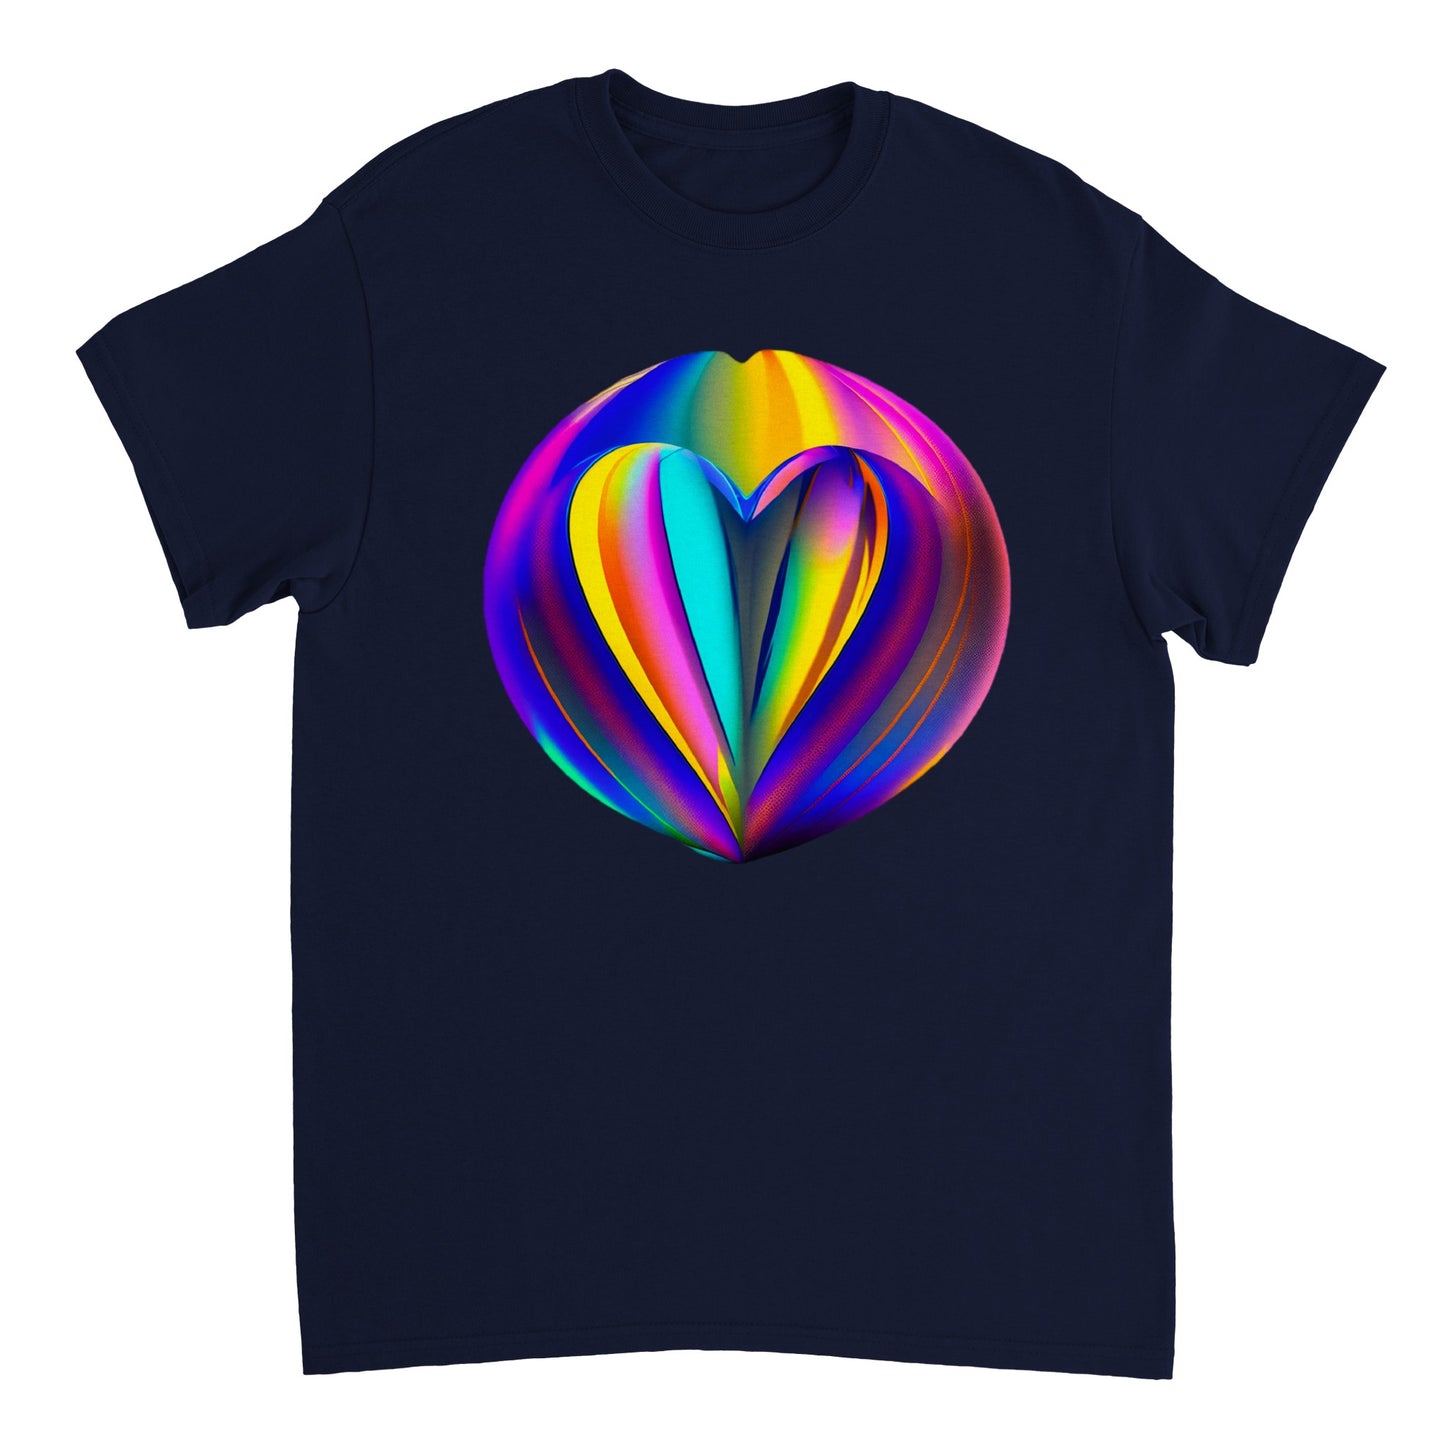 Love Heart - Heavyweight Unisex Crewneck T-shirt 37